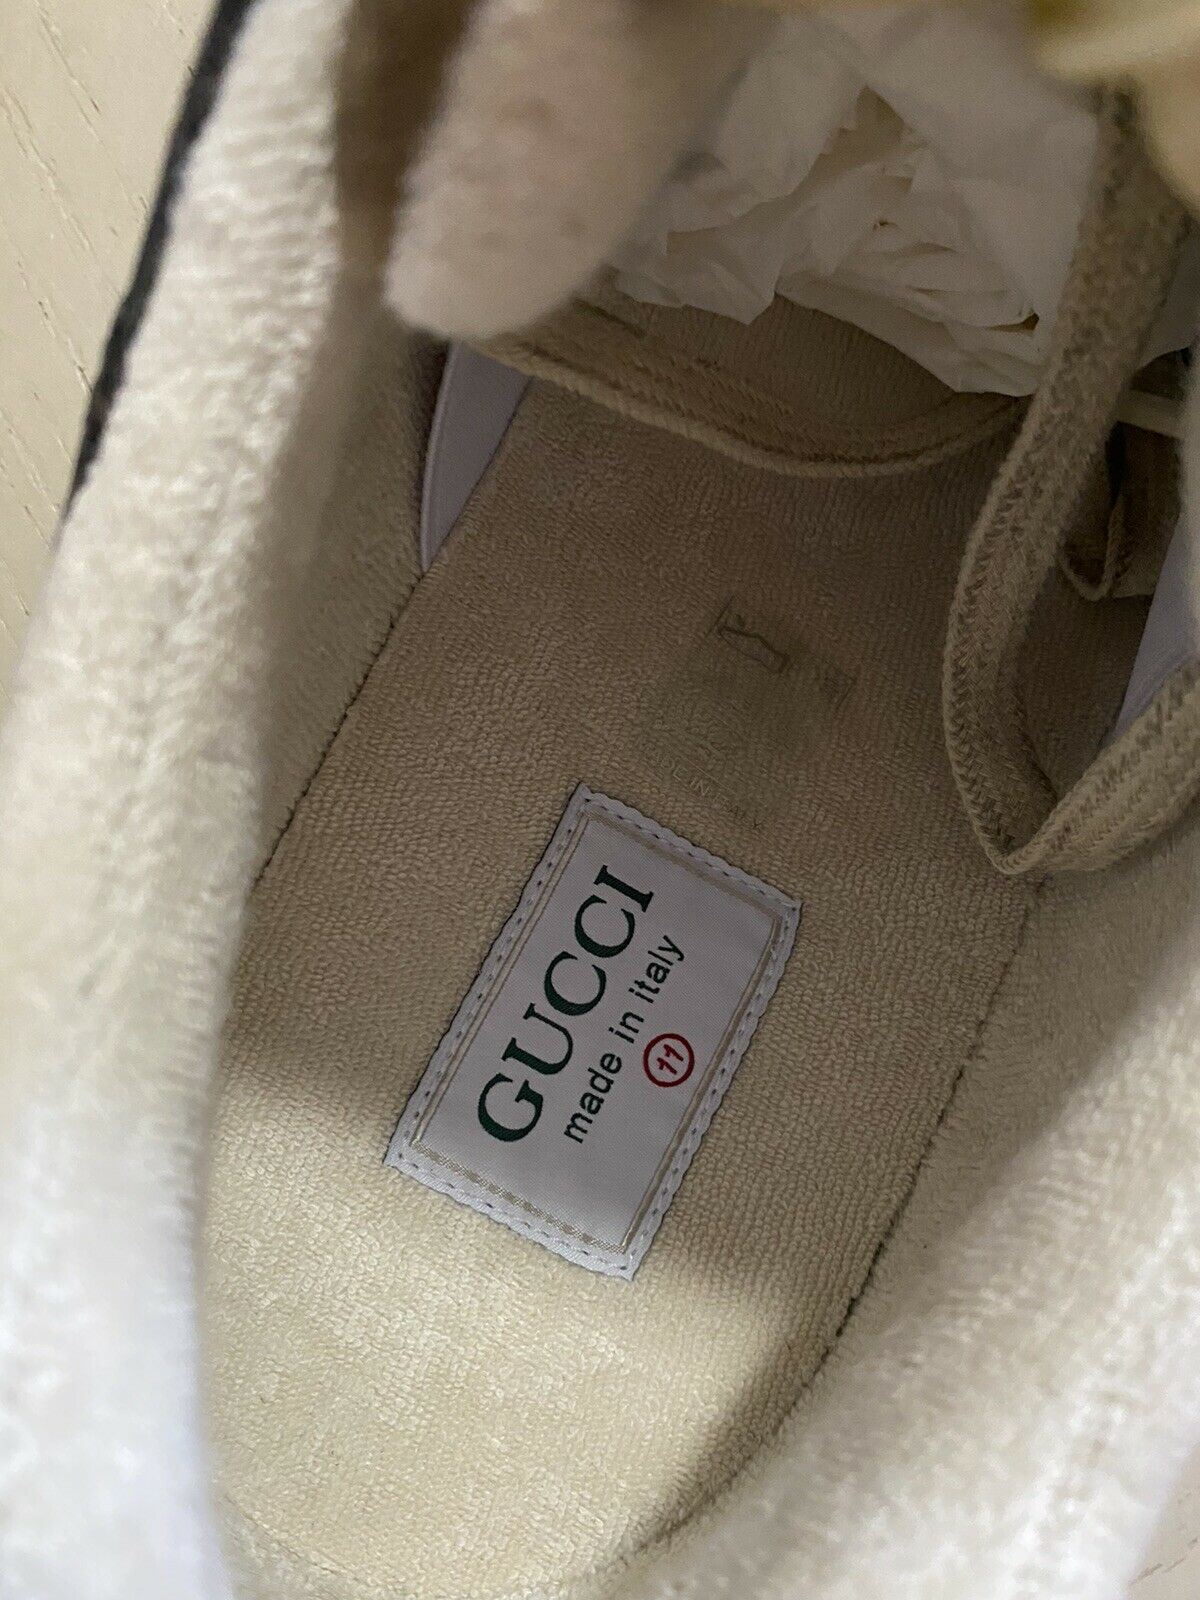 Neue Gucci Herren-Sneaker aus Leder, Braun/Grau/Beige, 9 US (8,5 g UK), Italien